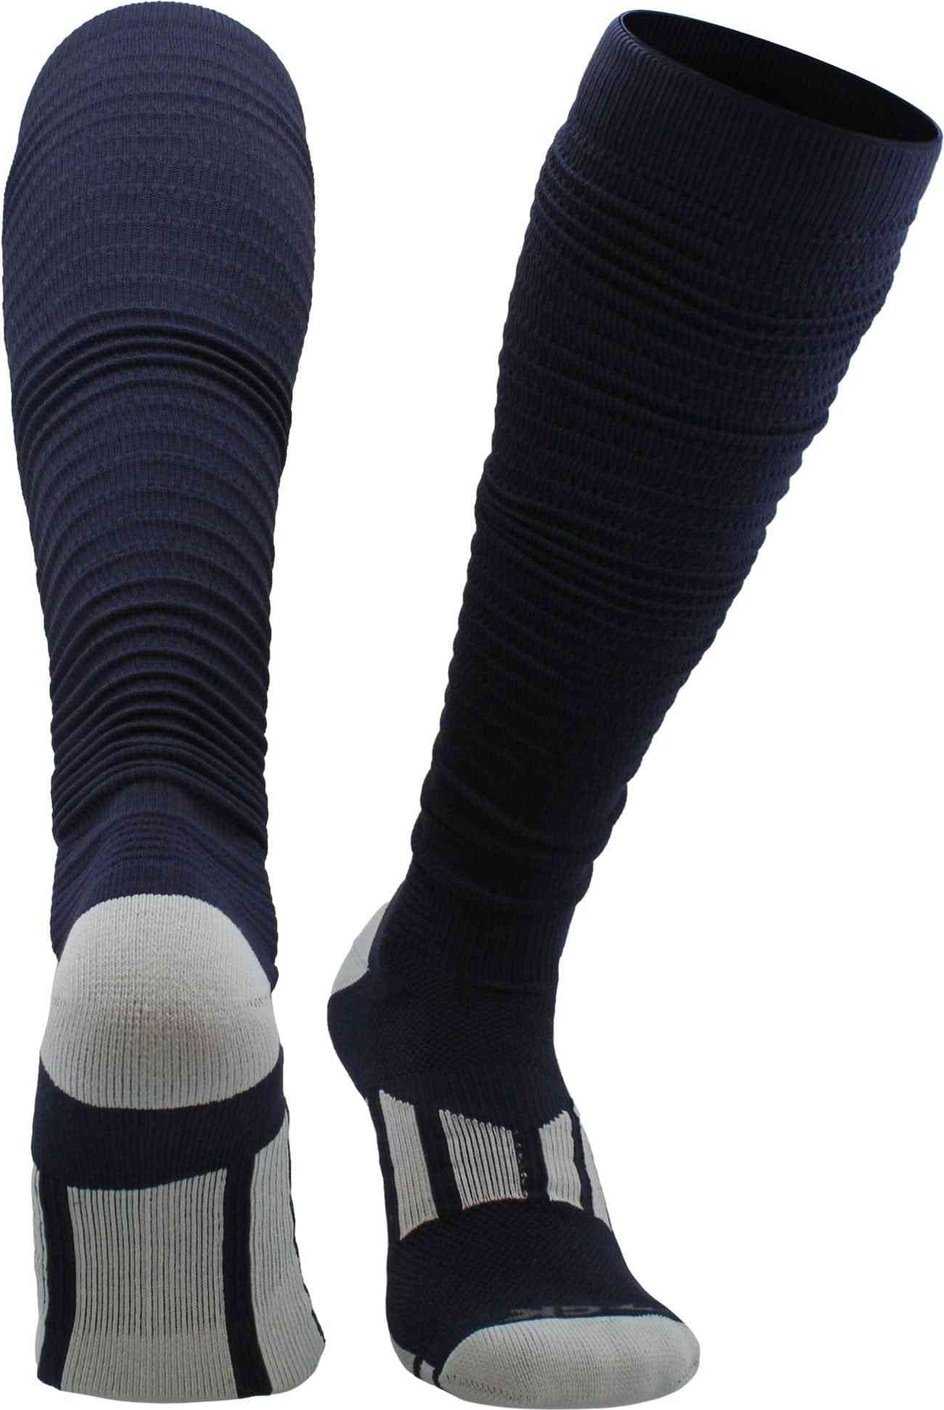 TCK Crunch Football Knee High Socks - Navy - HIT a Double - 1